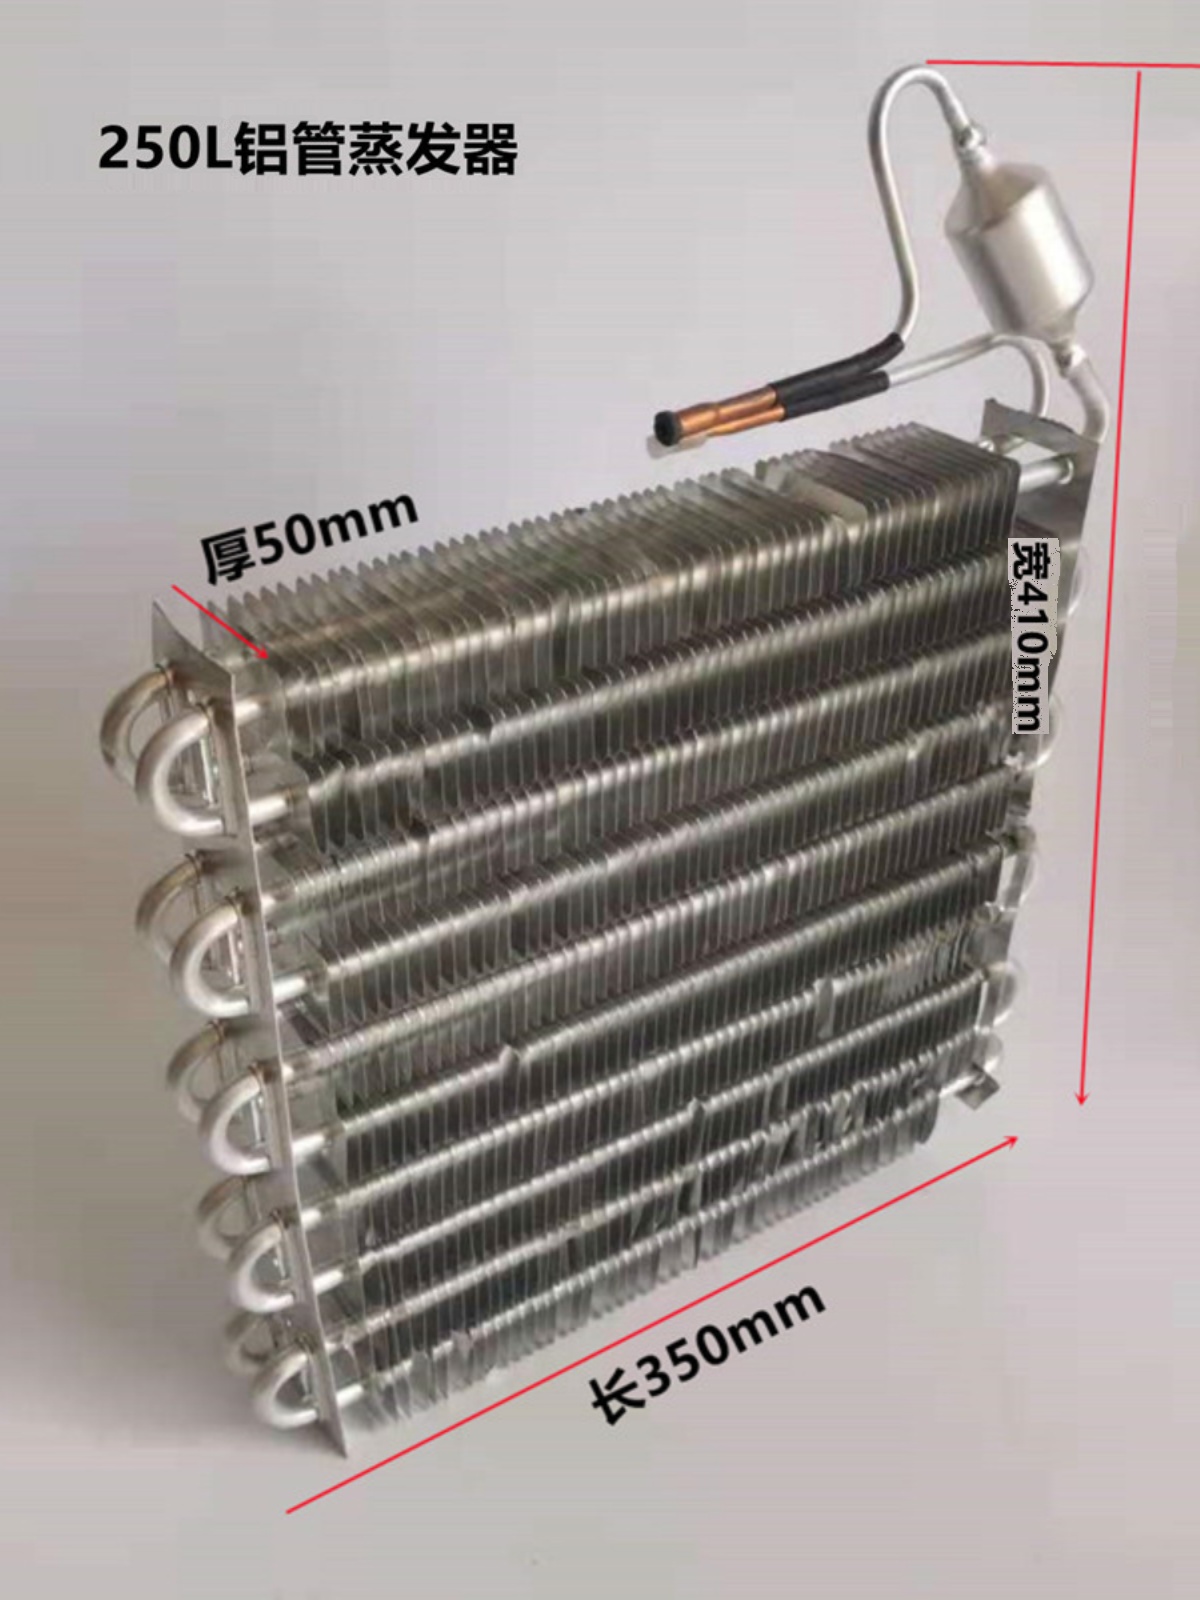 新品铝管铝翅片冷凝器 铜管散热器 适用空调冷柜散热蒸发器散热片